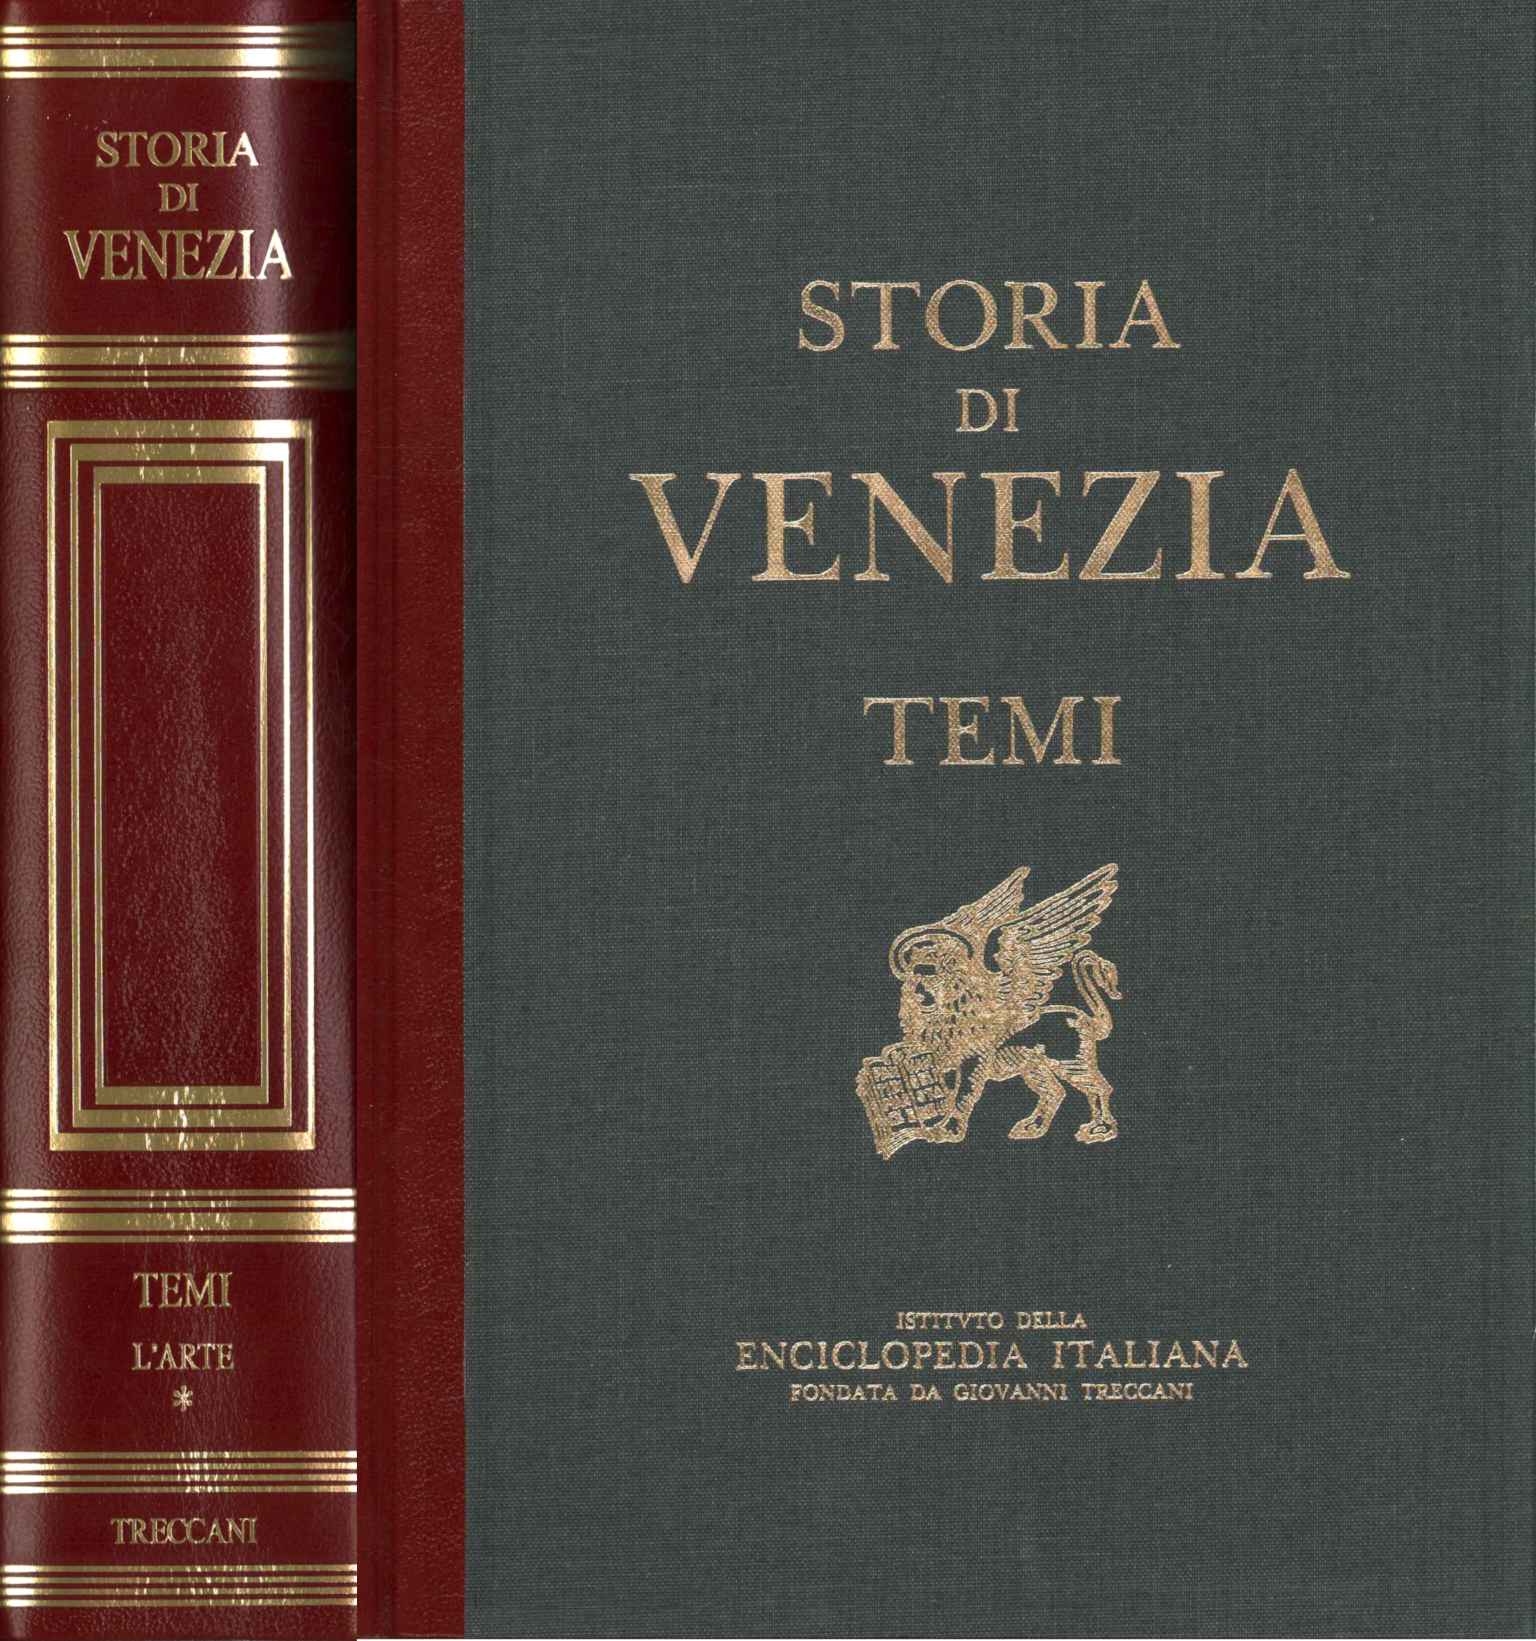 Temas de historia de Venecia. Arte, Historia de Venecia. Temas. El arte